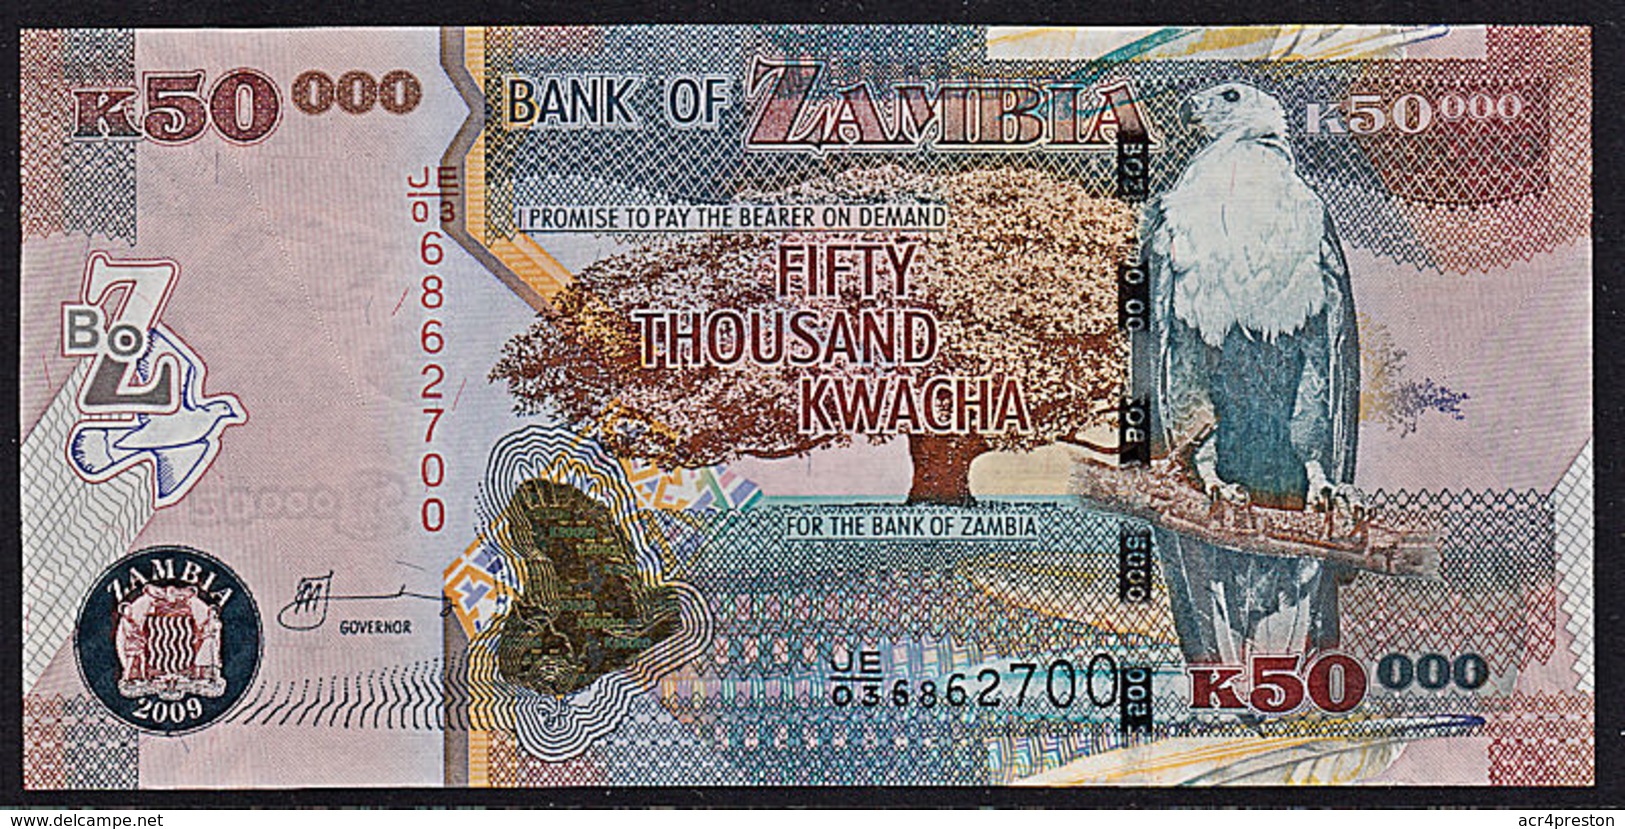 Zmb077 ZAMBIA 2009, 50000 Kwacha Banknote, (JE Serial Numbers) Unc - Zambia